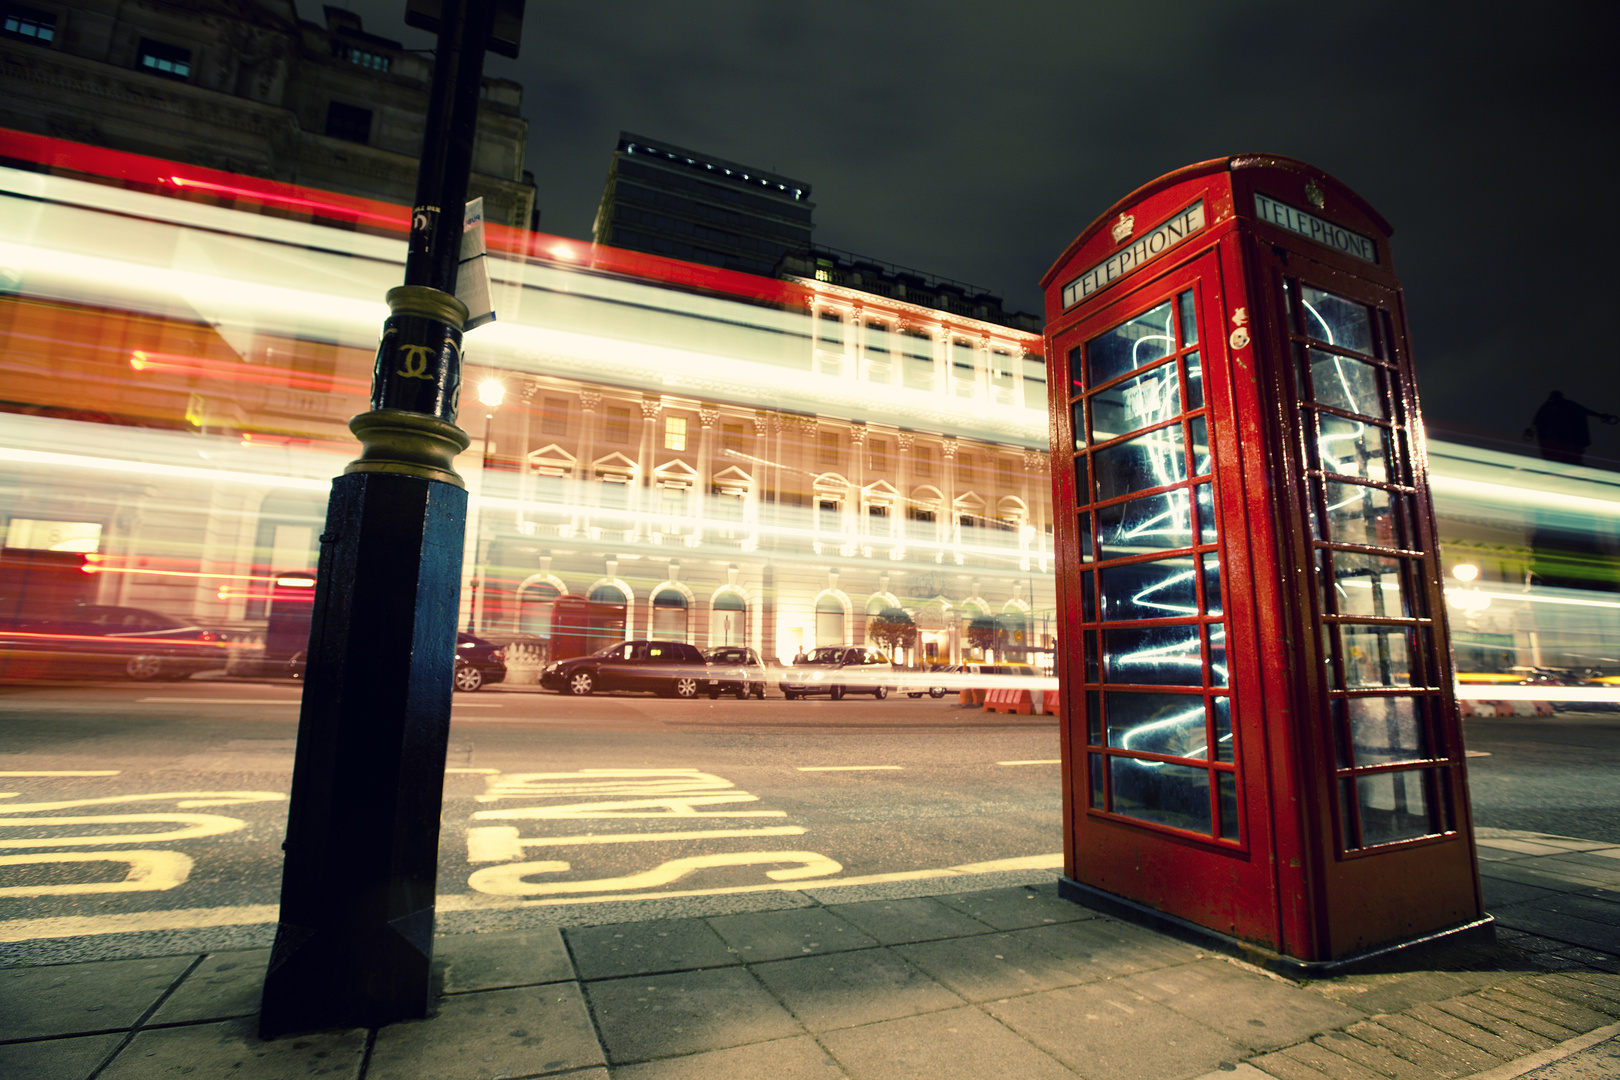 Telephone box at night